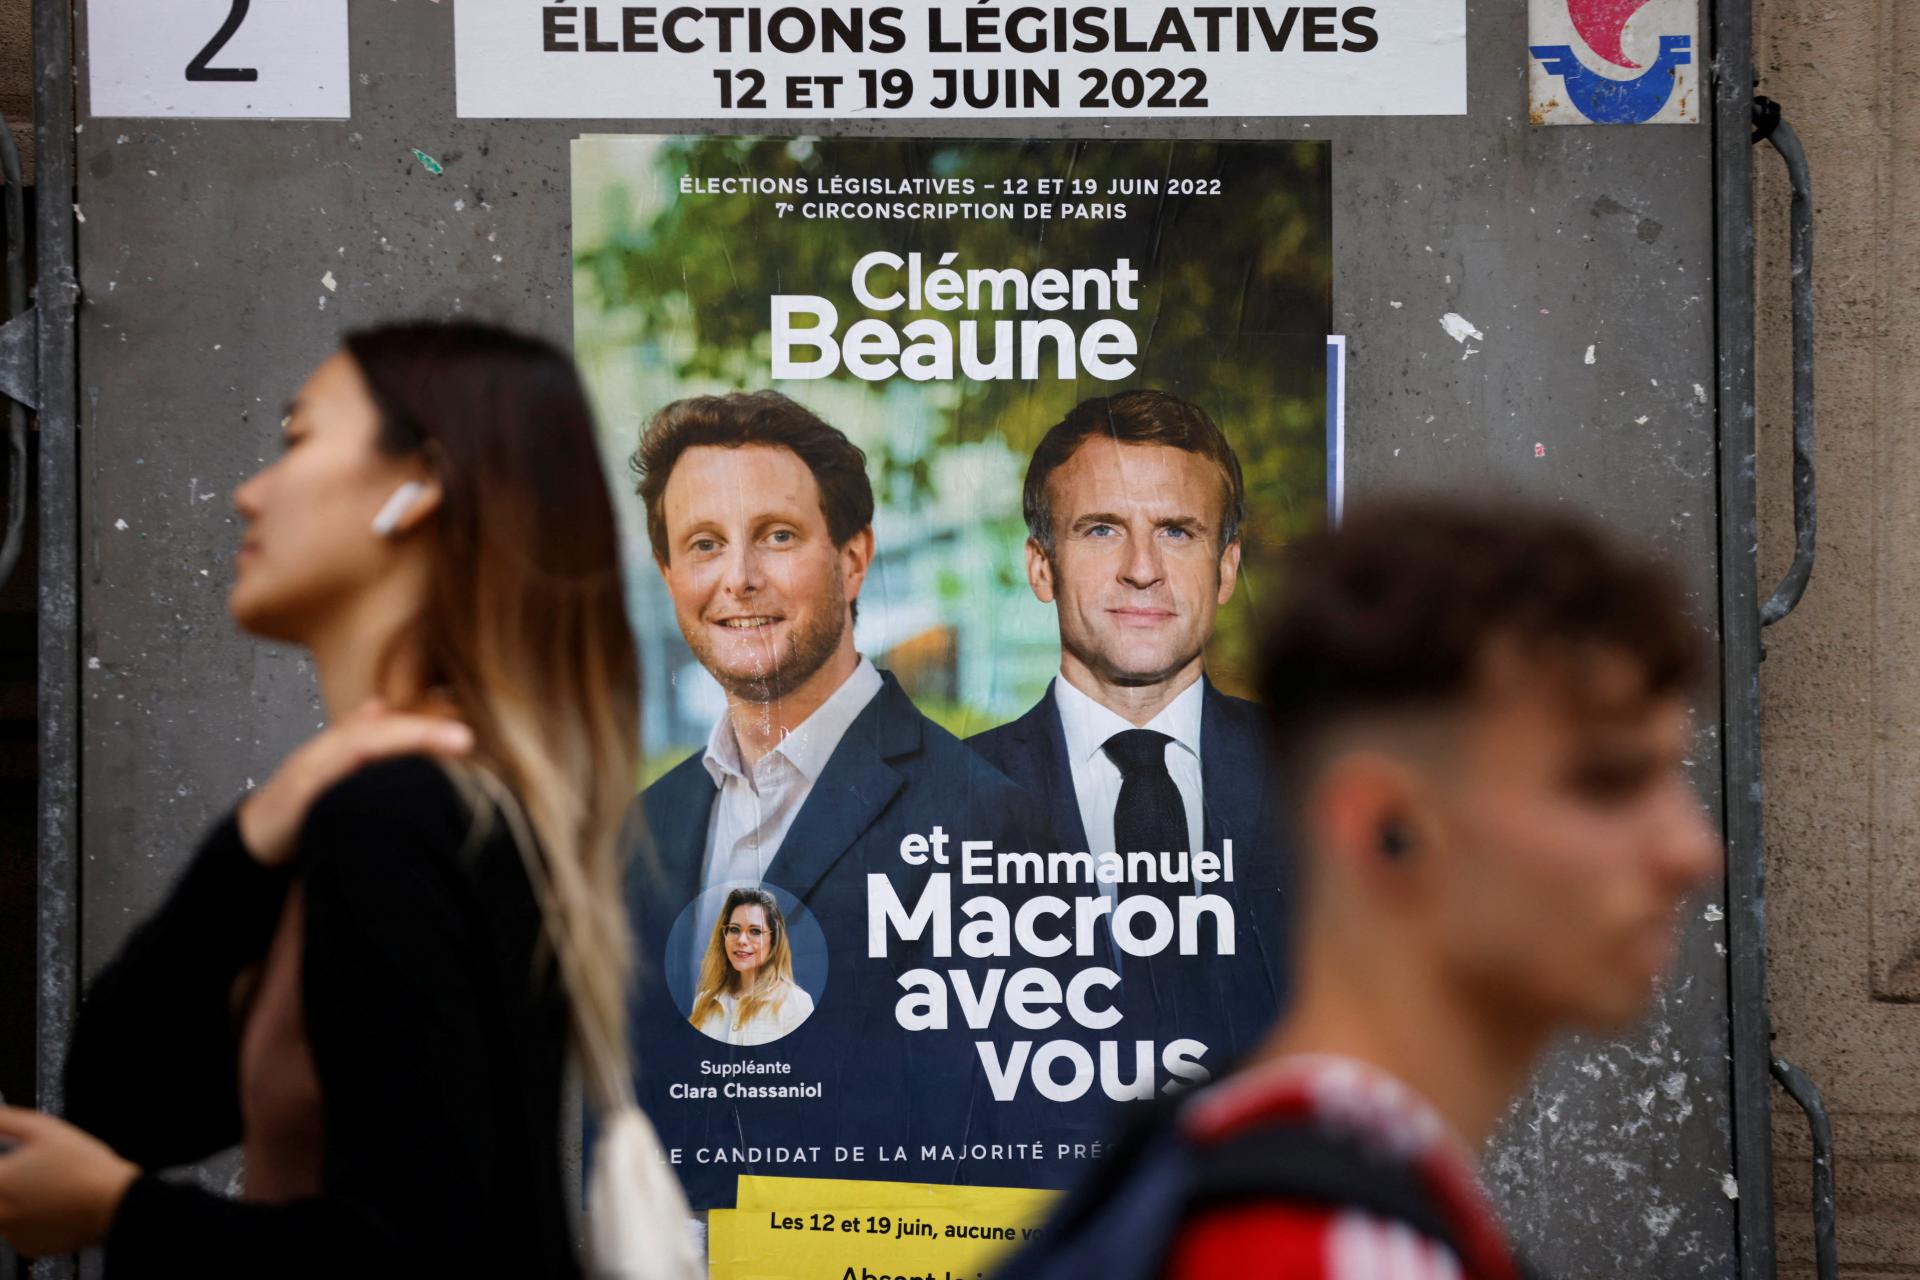 La France élira un parlement.  Le président Macron se bat pour la force de son influence